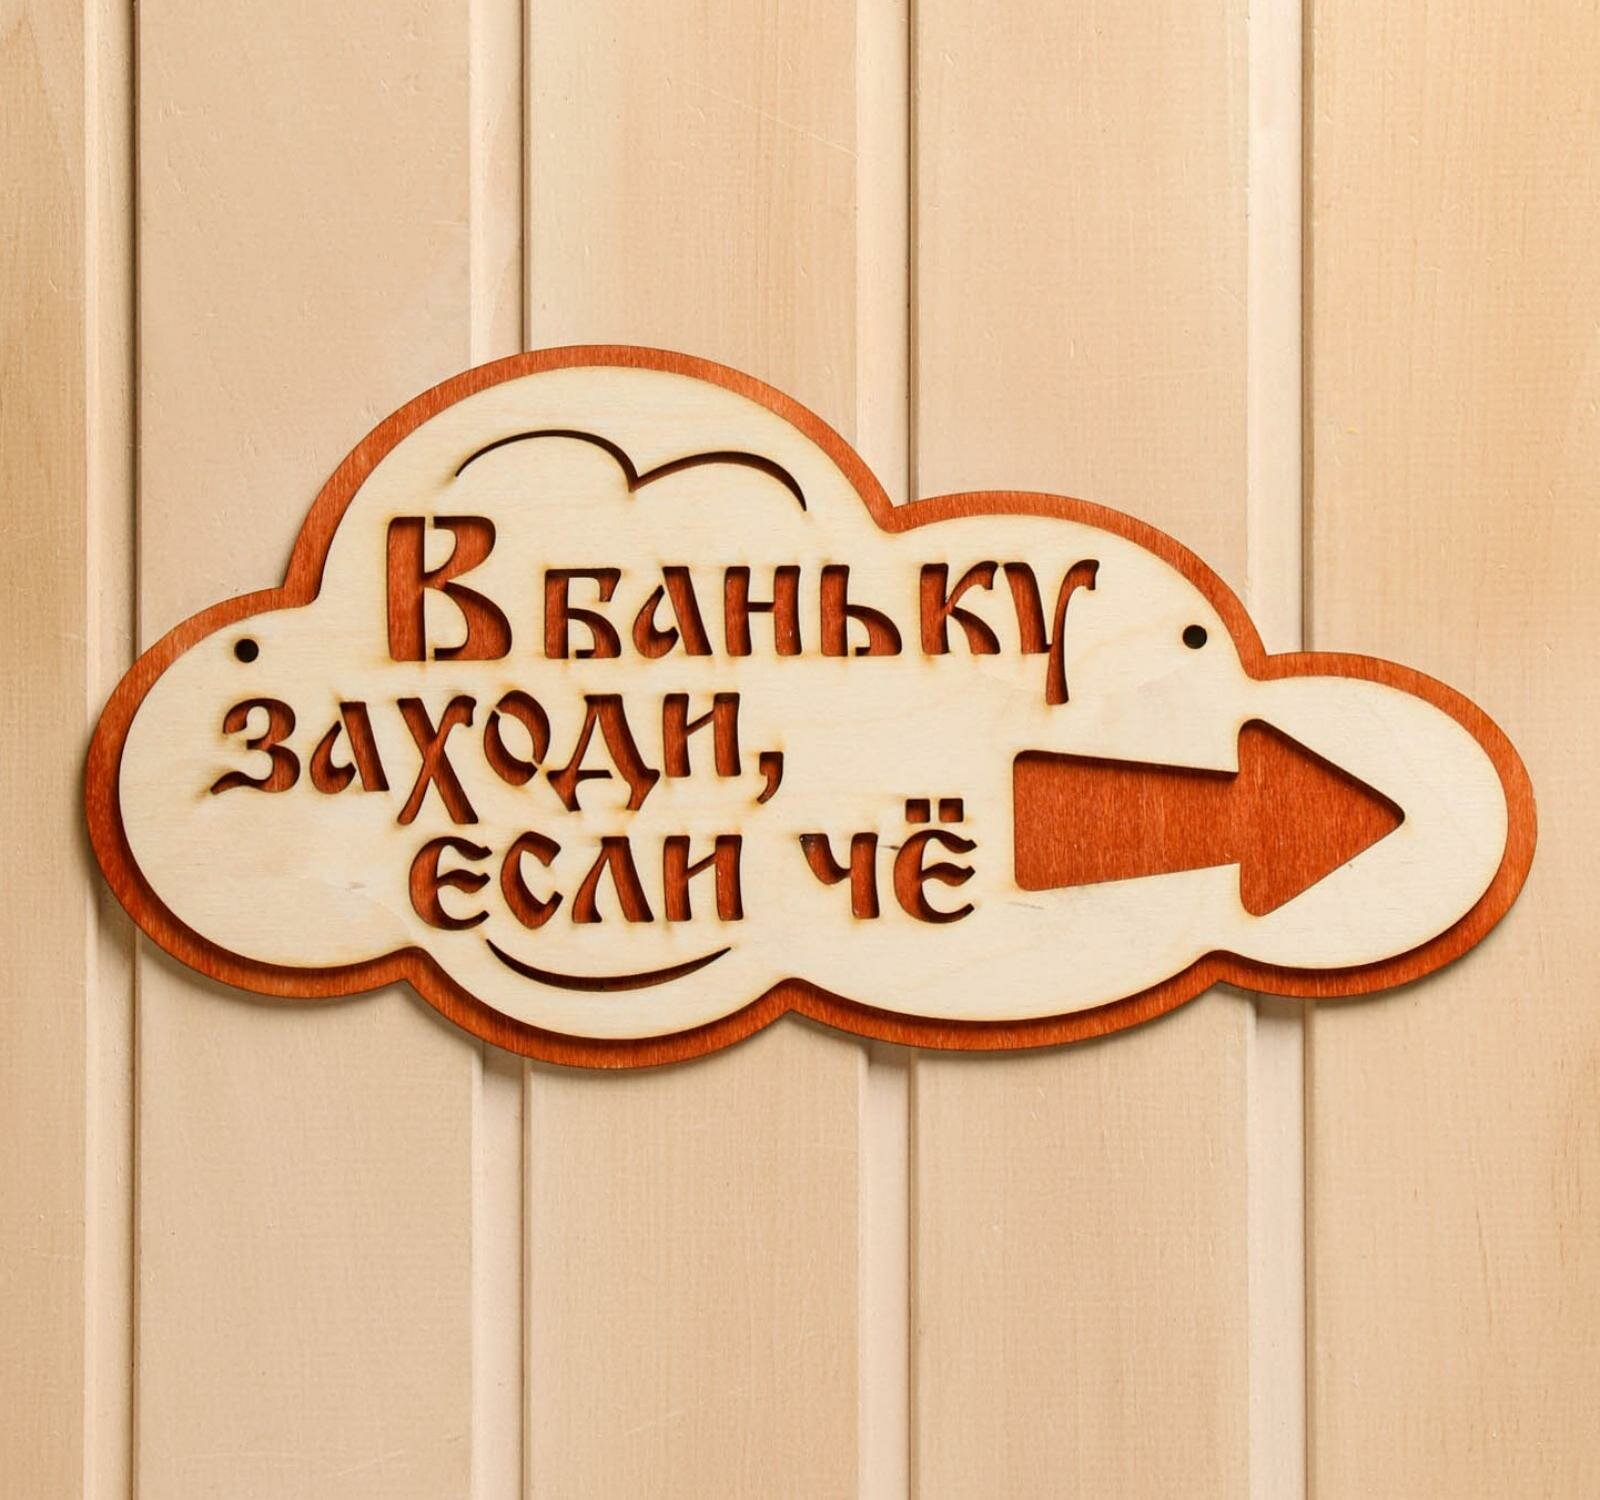 Указатель- облако с надписью "В баньку заходи, если че" правый, 33х17см